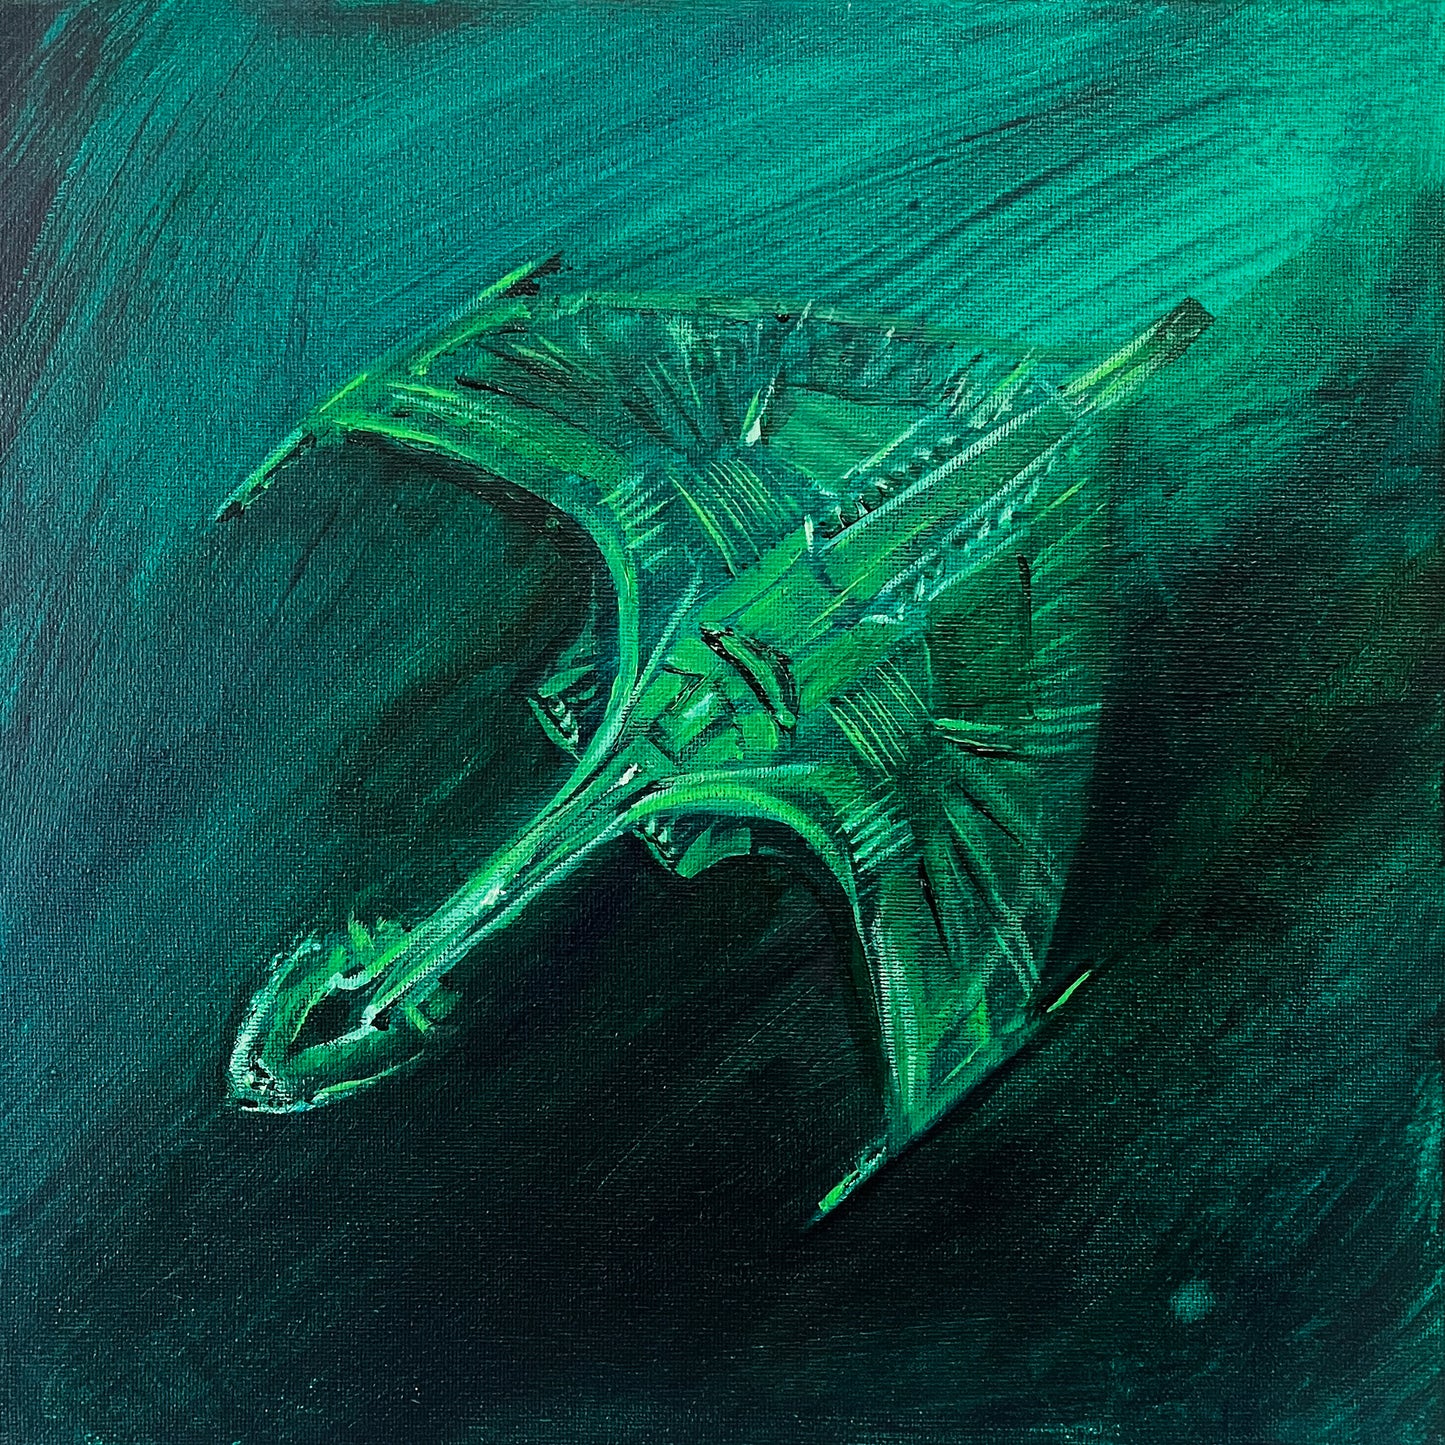 Sketch : Romulan Warbird Top, original acrylic painting